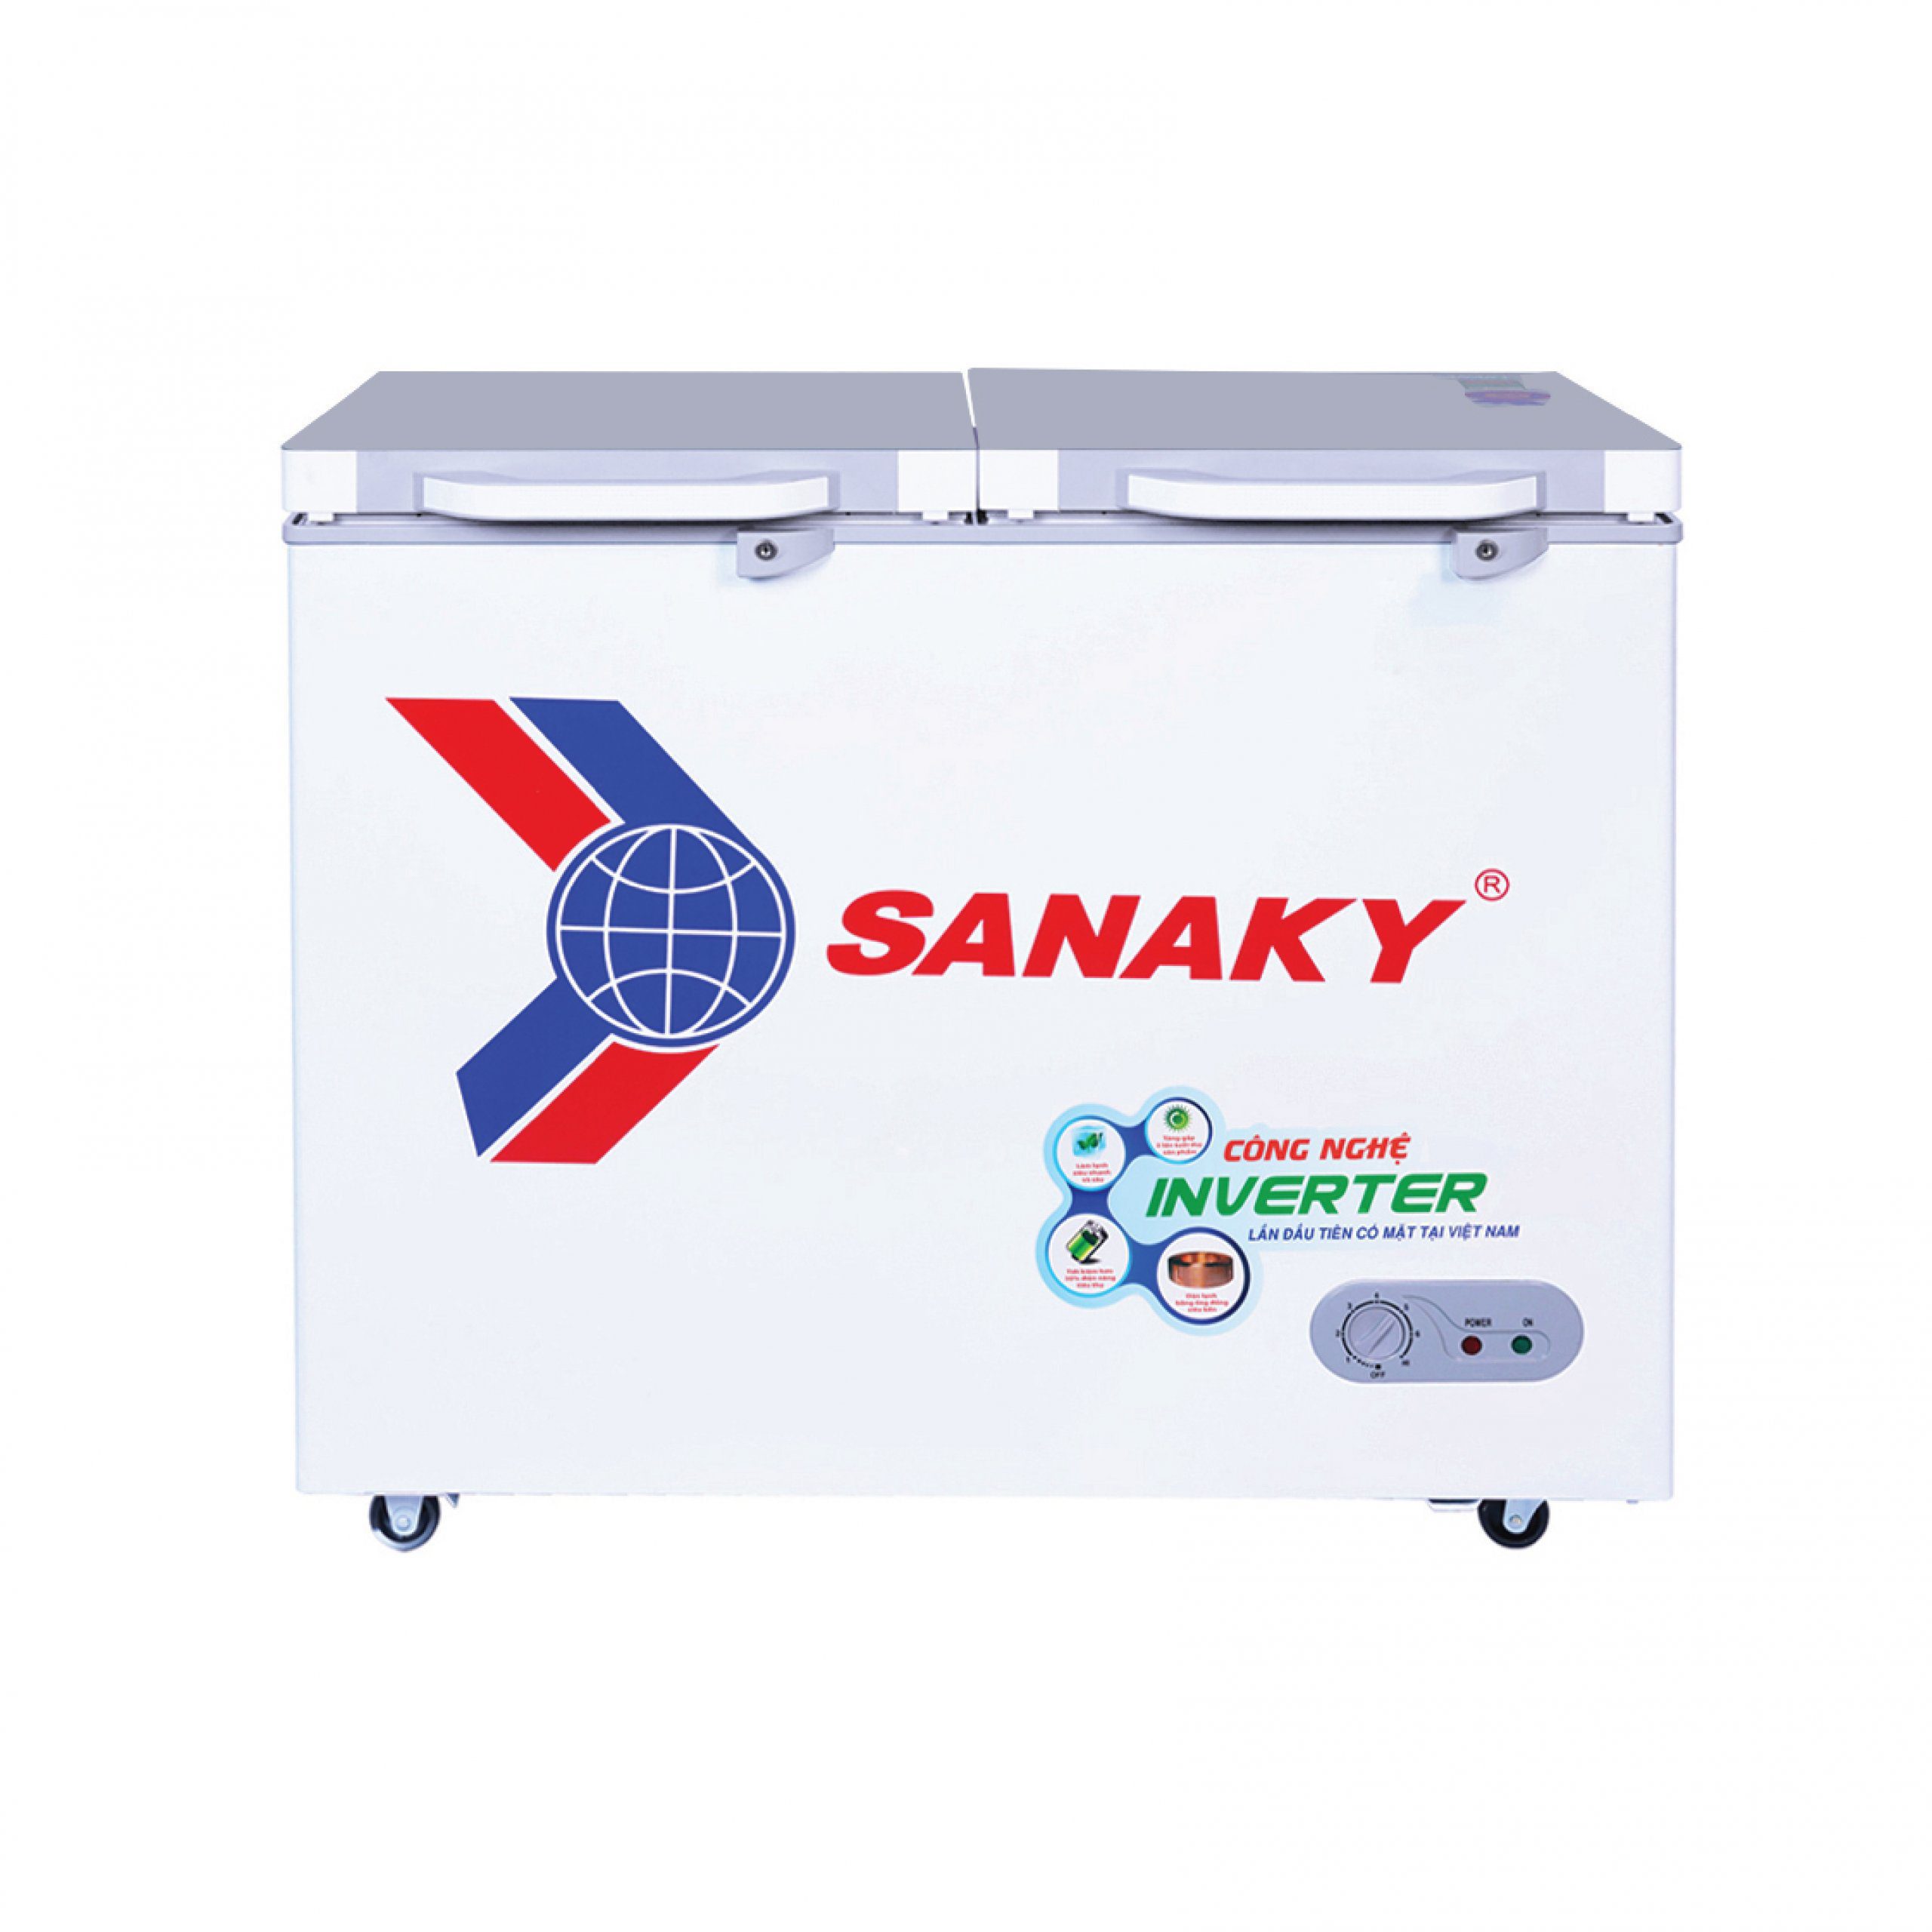 Tủ đông Sanaky VH-2899A4K | 235L 1 ngăn 2 cánh inverter